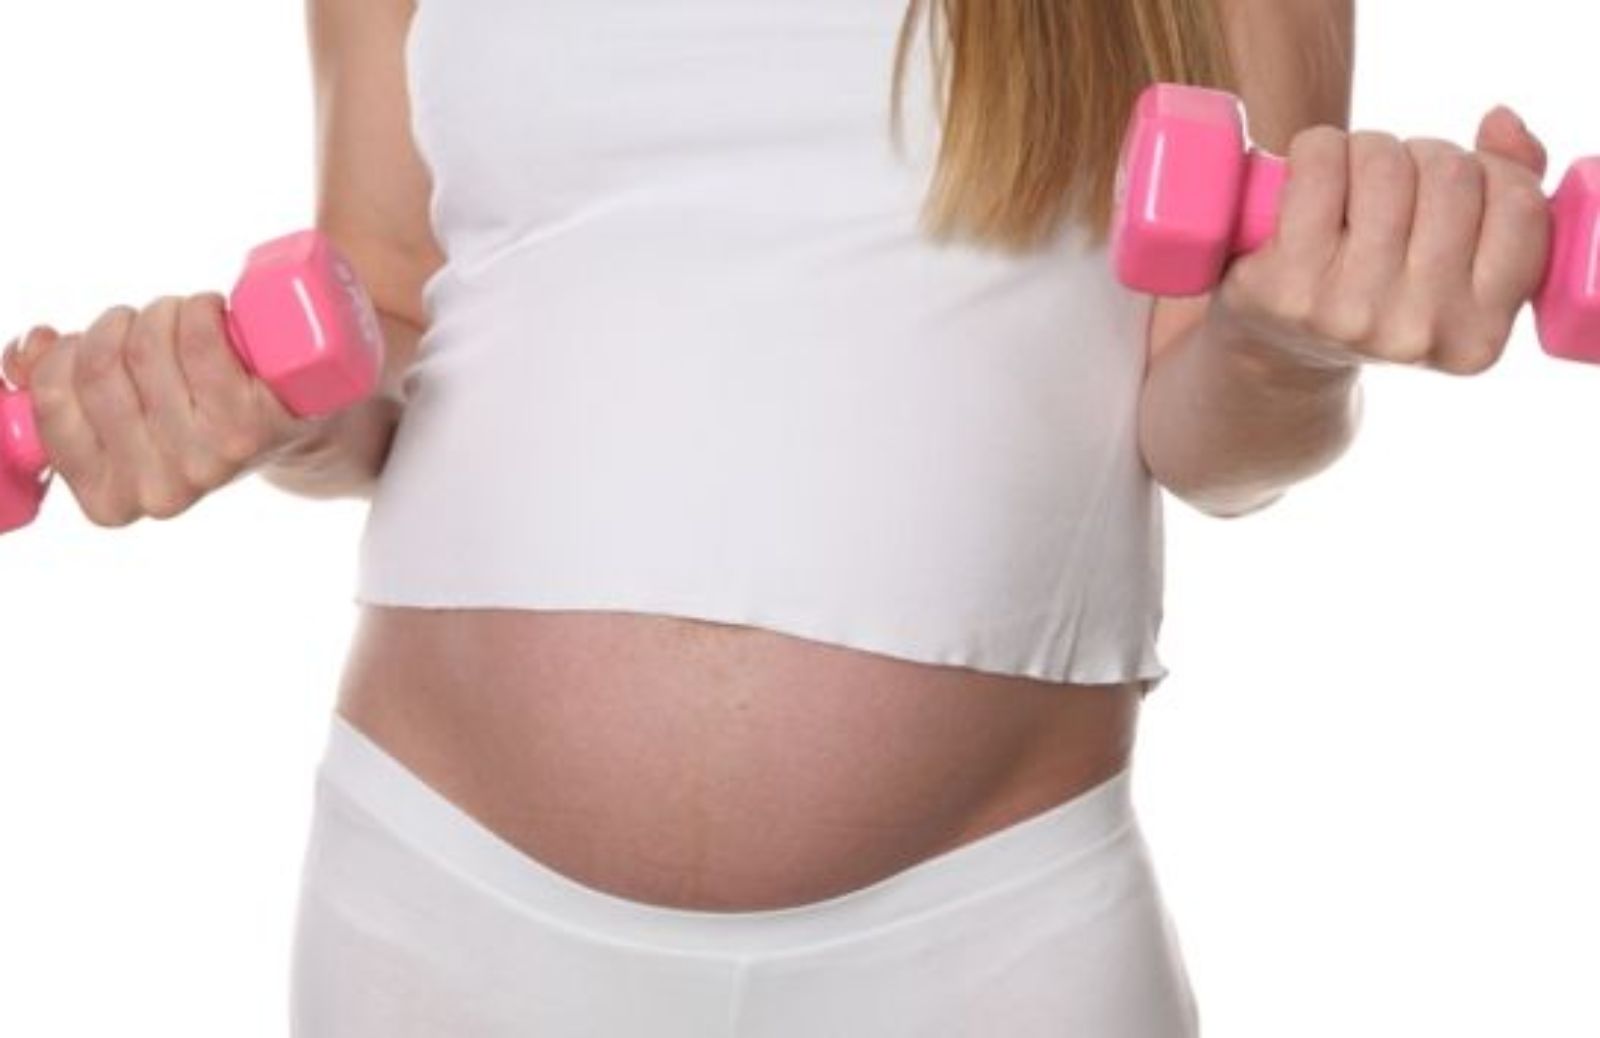 Come fare pilates in gravidanza: braccia e spalle - II trimestre